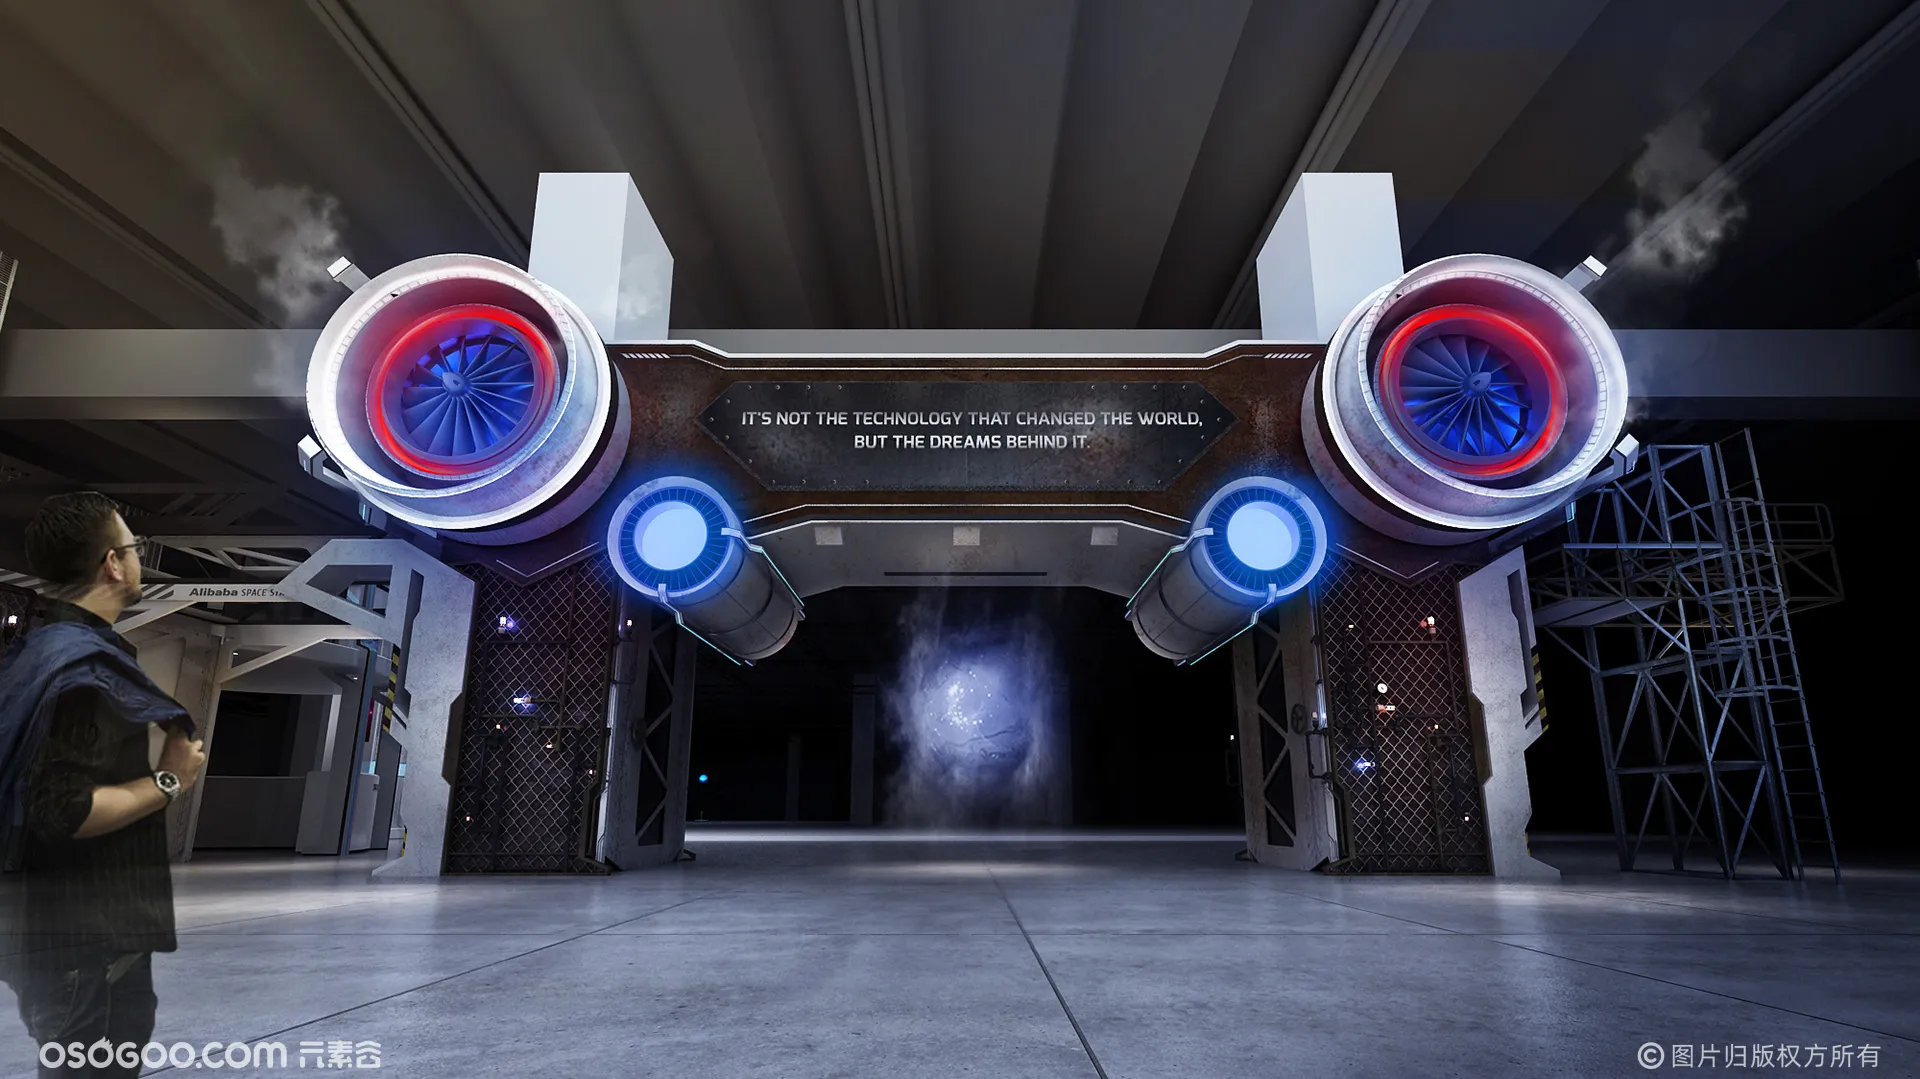 阿里巴巴空间站—门头氛围与前期设计方案